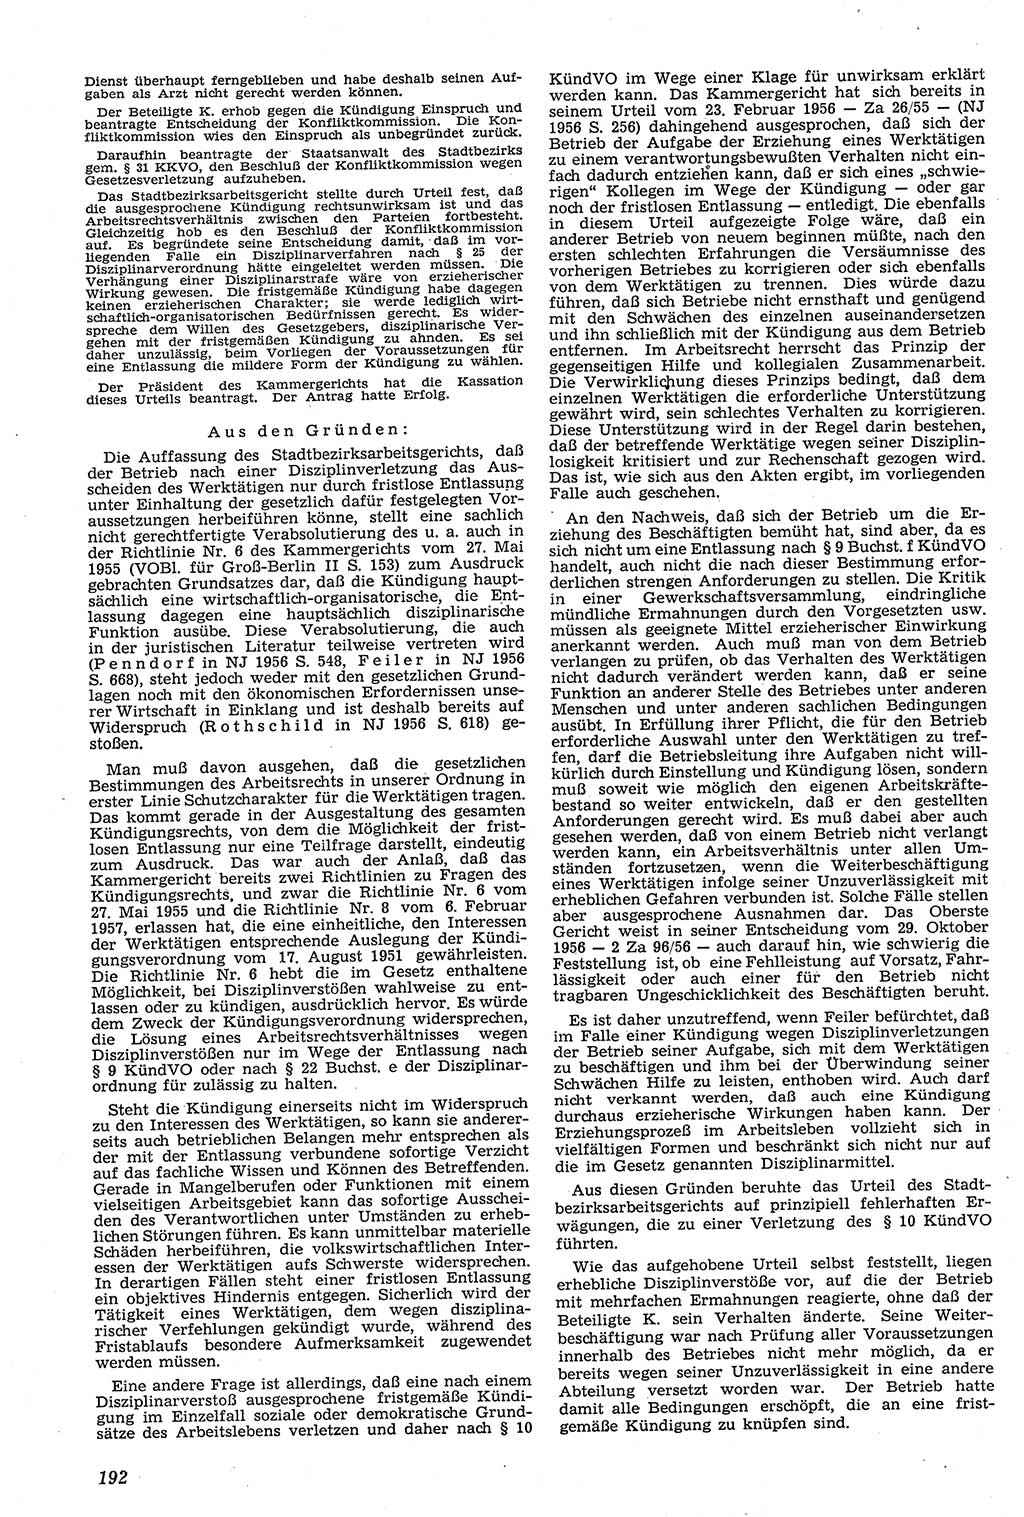 Neue Justiz (NJ), Zeitschrift für Recht und Rechtswissenschaft [Deutsche Demokratische Republik (DDR)], 11. Jahrgang 1957, Seite 192 (NJ DDR 1957, S. 192)